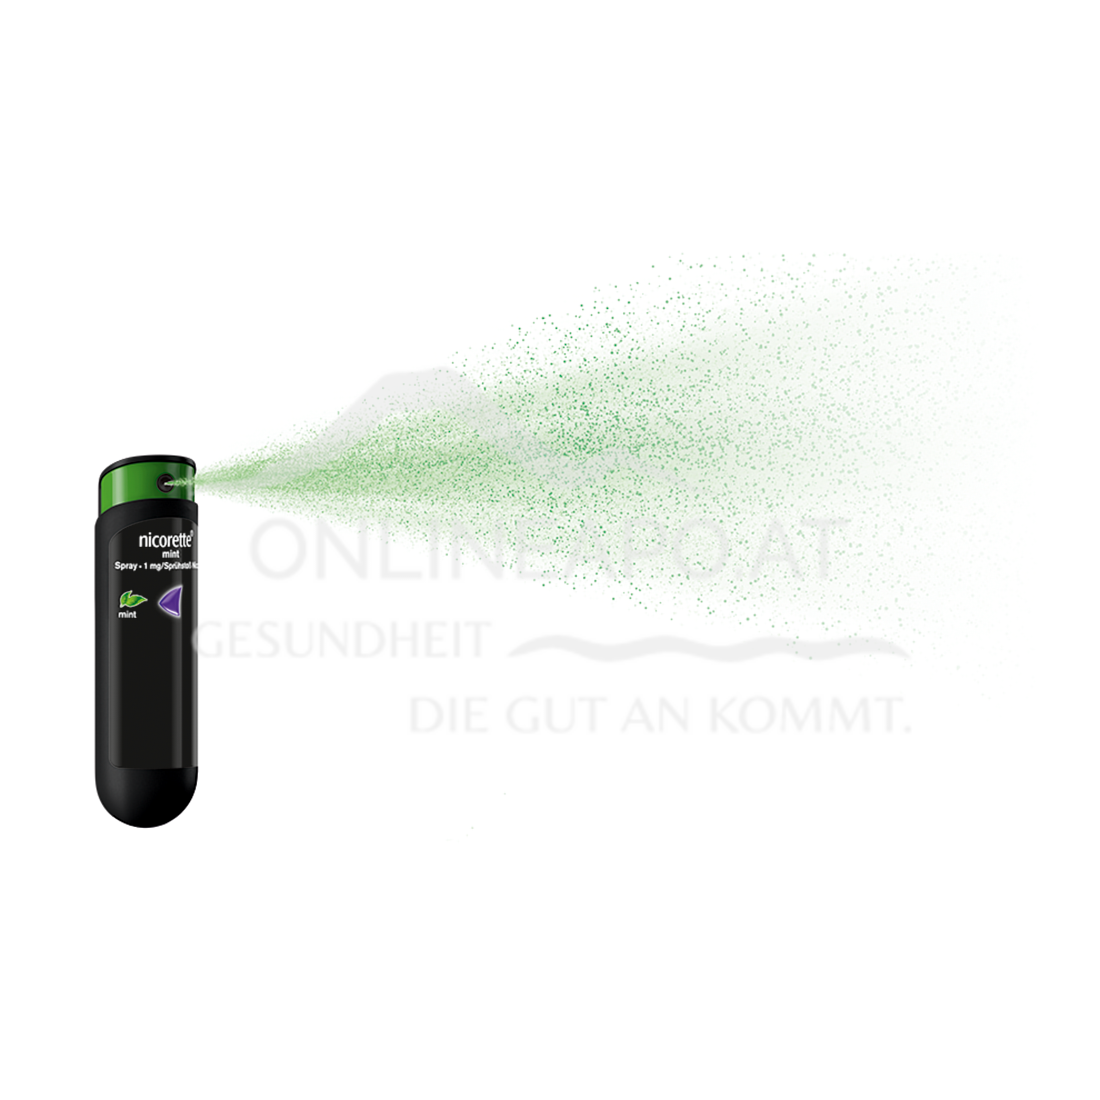 Nicorette Mint Spray 1 mg/Sprühstoß Spray zur Anwendung in der Mundhöhle, Lösung 